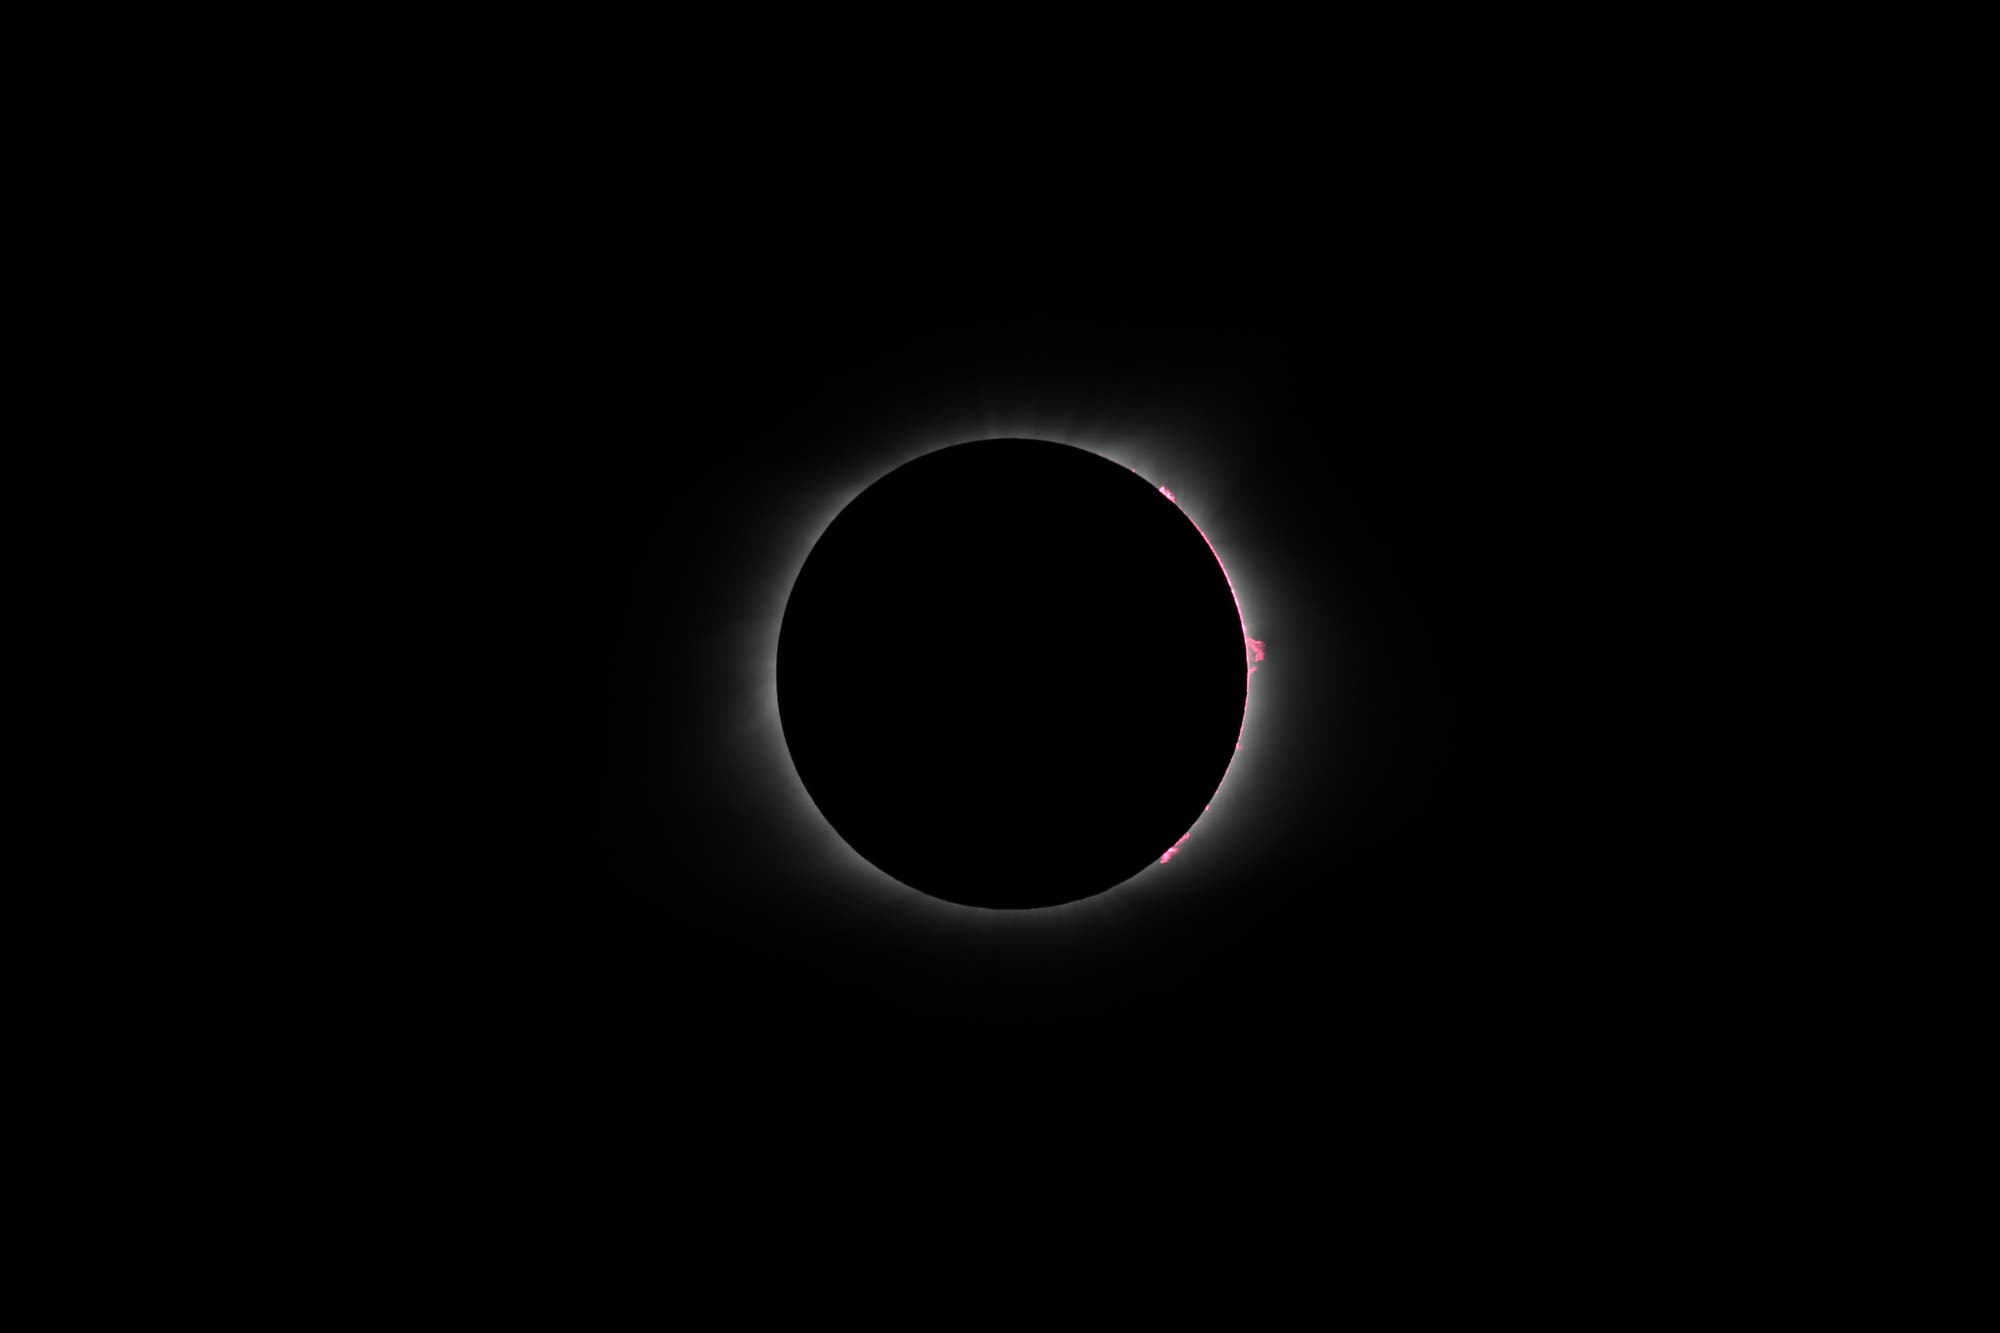 Sonnenfinsternis 21. August 2017 -3